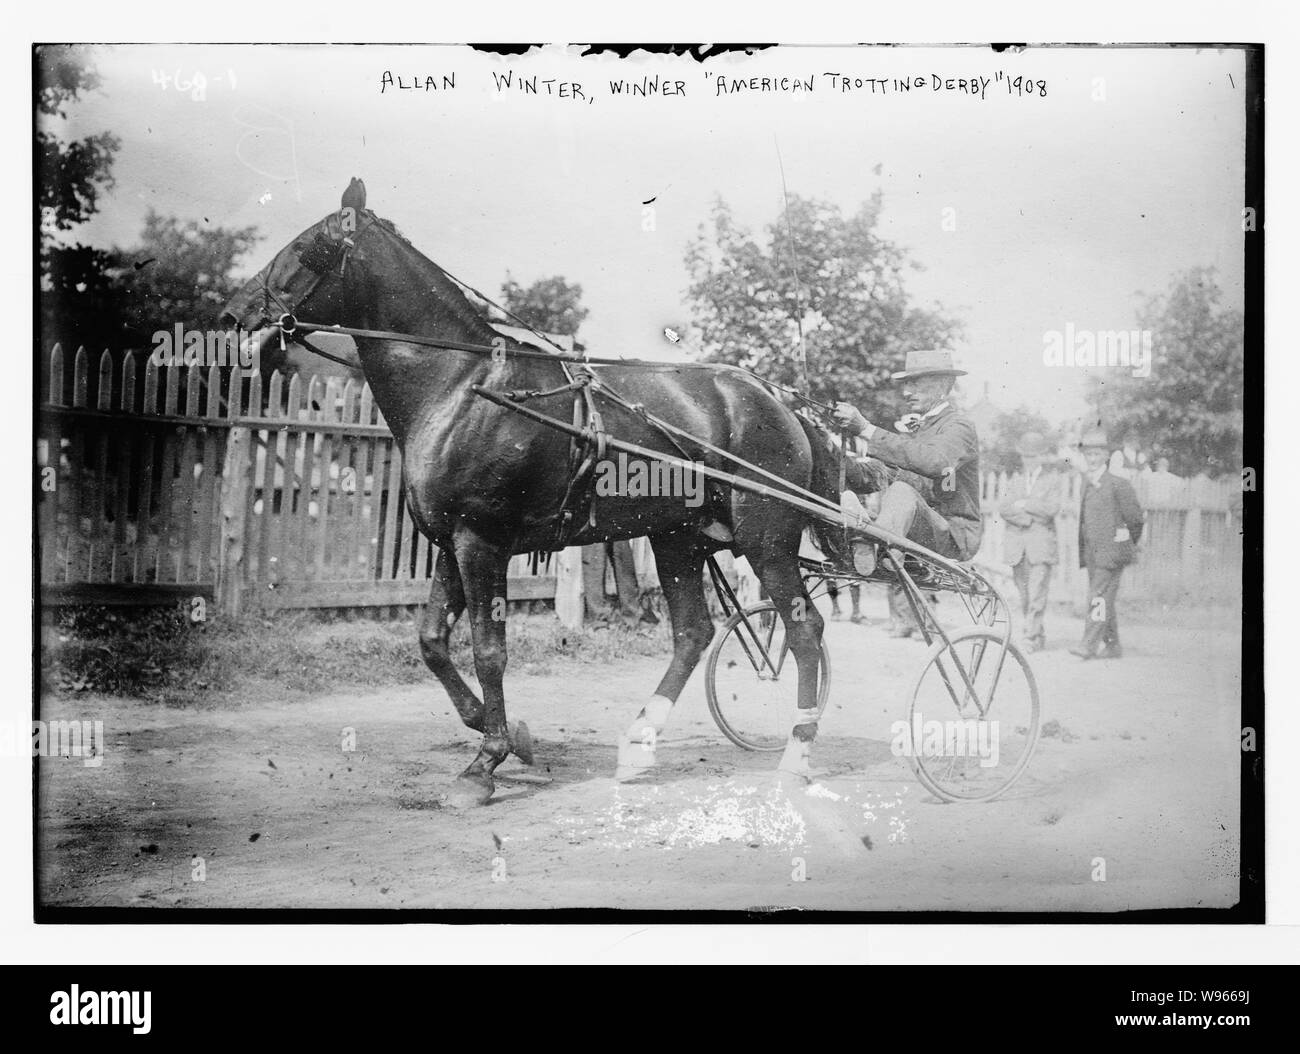 Allan Winter, Sieger, Amerikanische Trotting Derby, 1908 Stockfoto